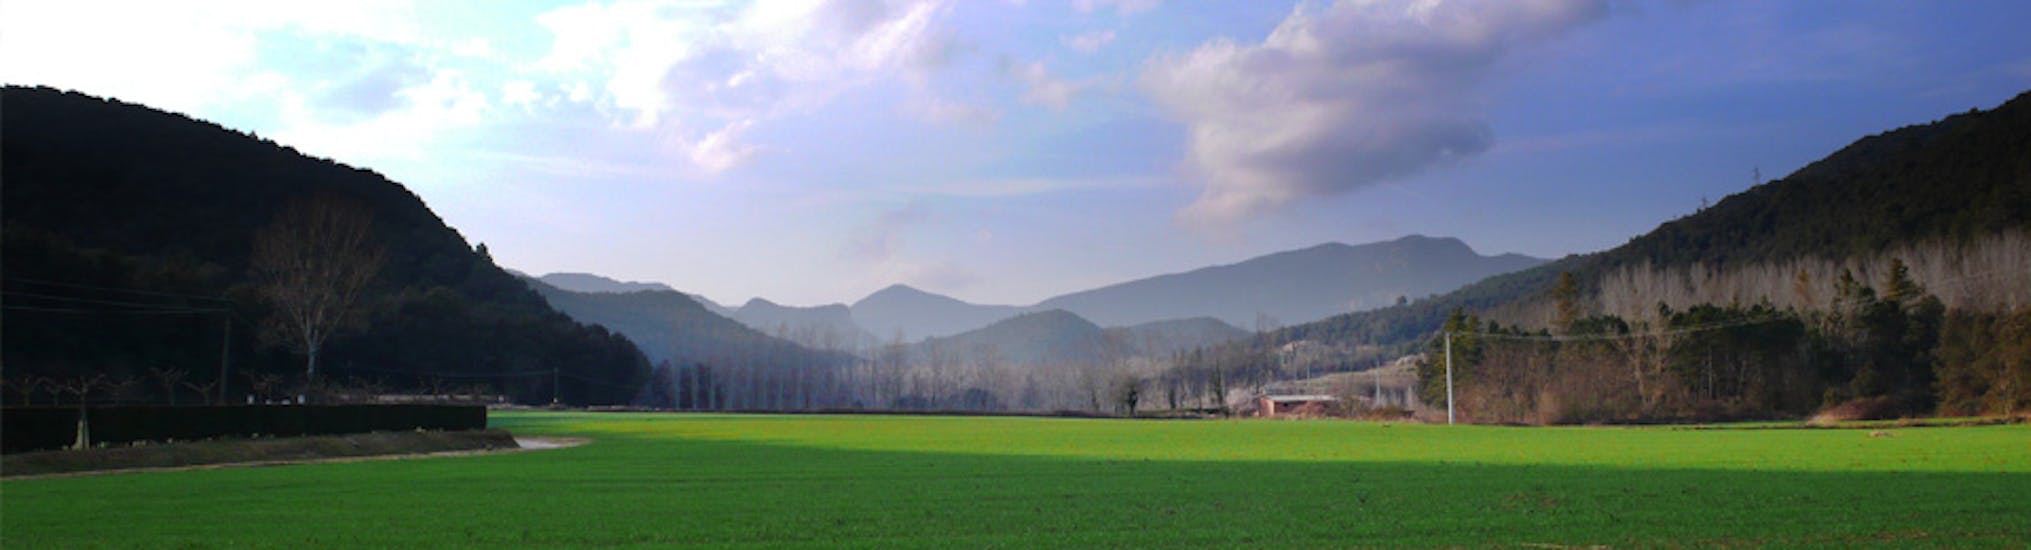 Llémena Valley, nature between El Gironès and La Garrotxa